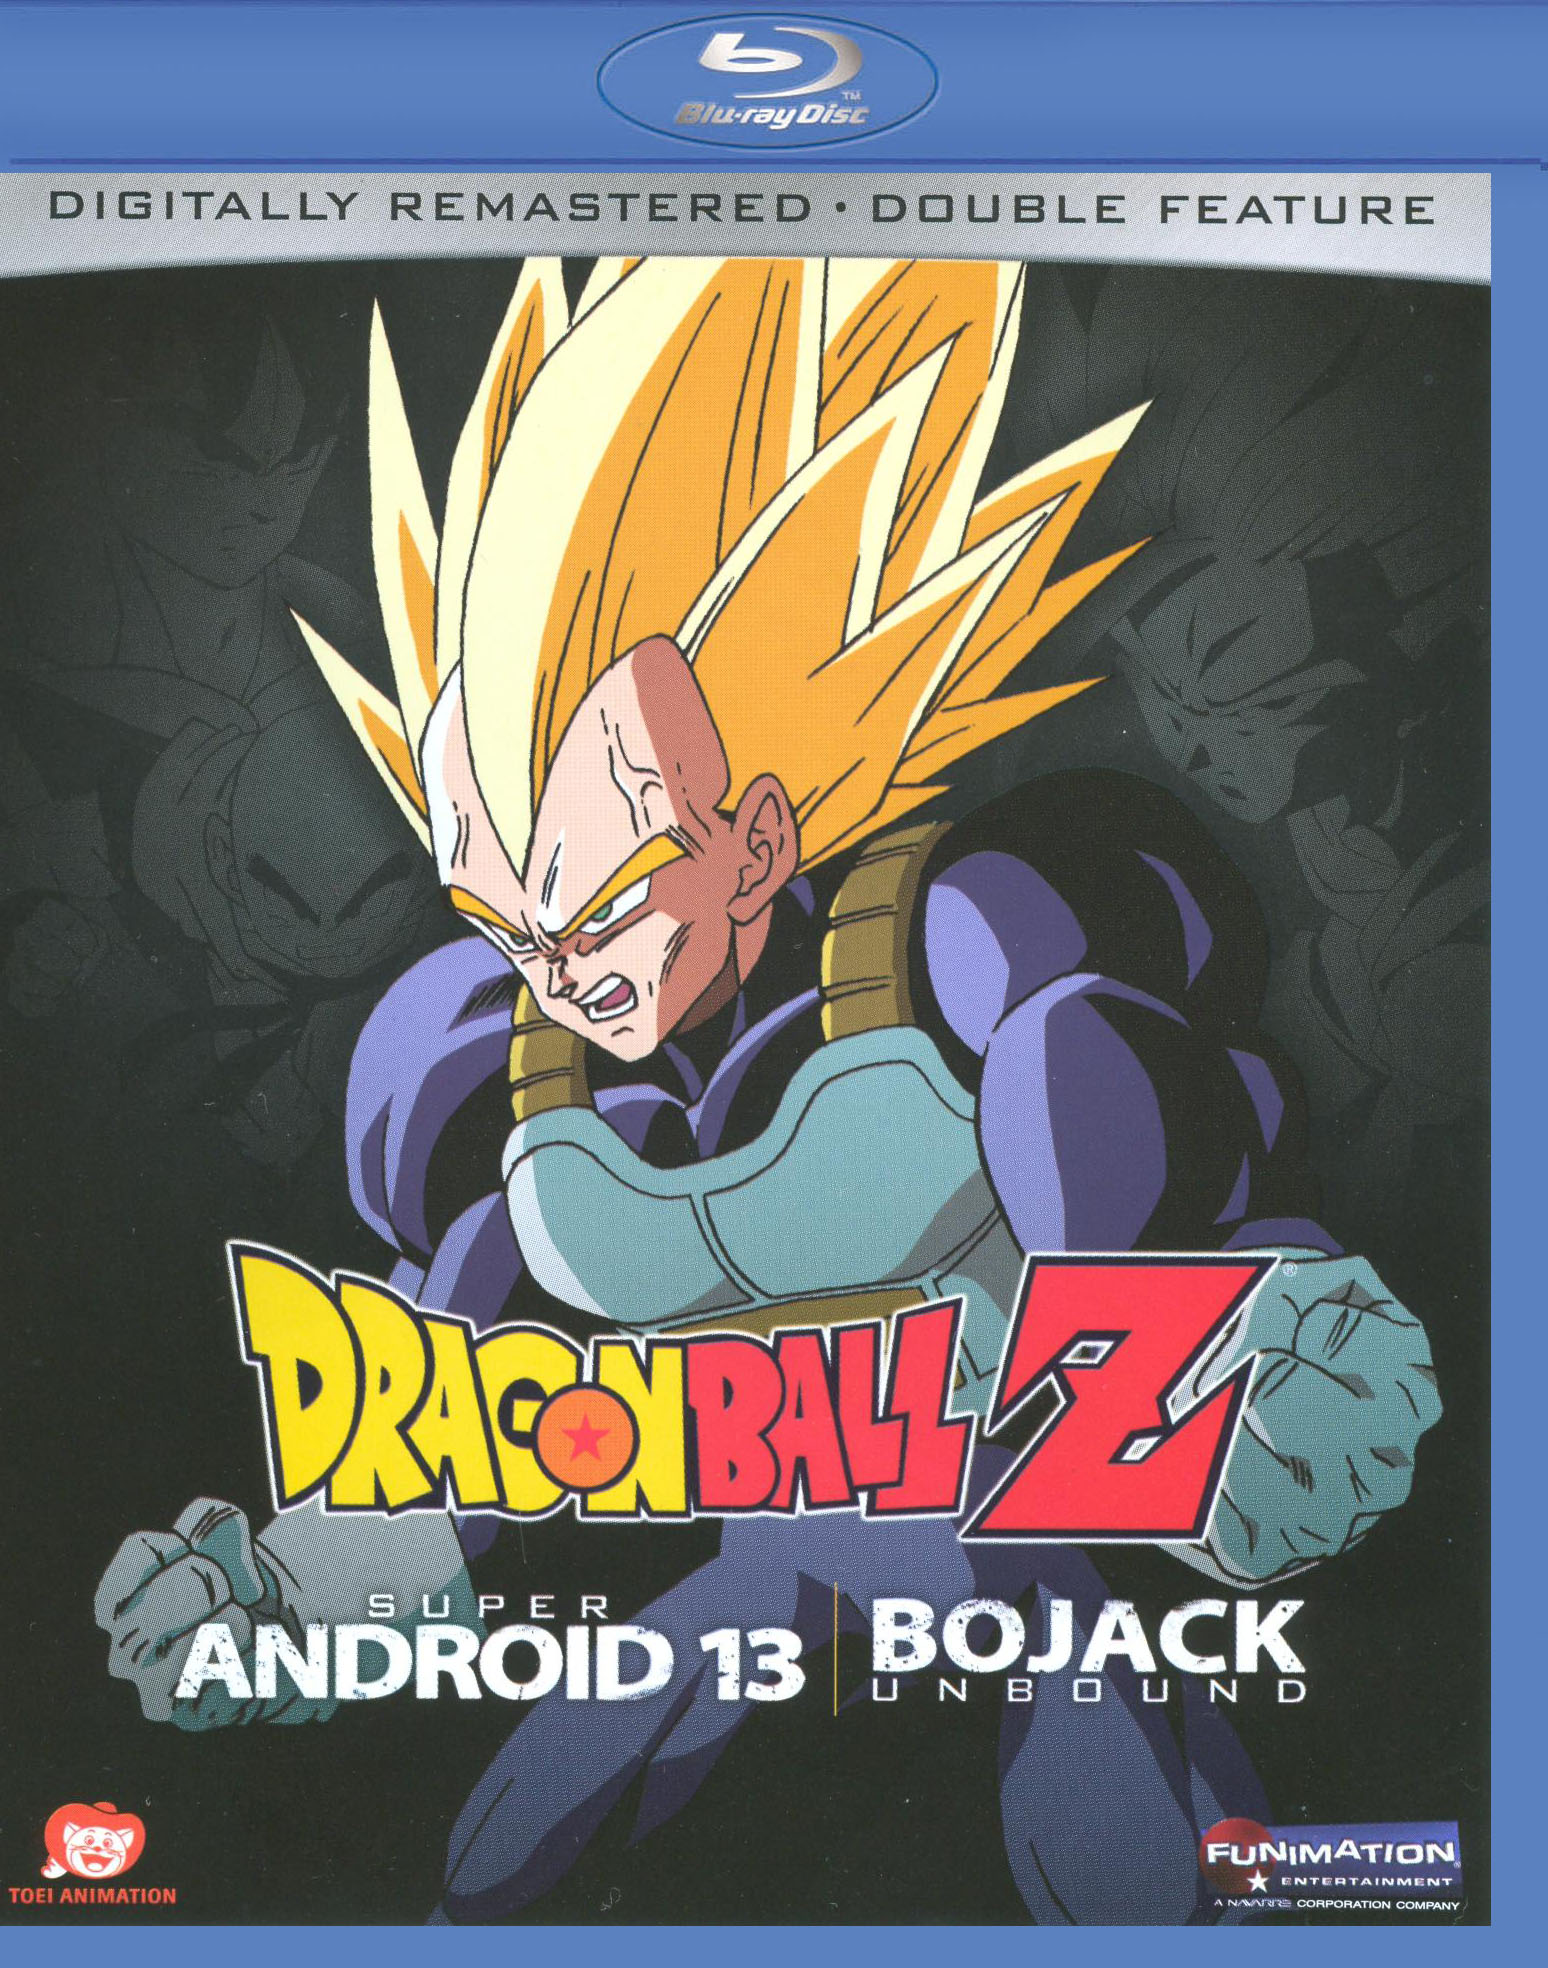 Android Saga by RuokDbz98  Dragon ball z, Anime dragon ball, Dragon ball